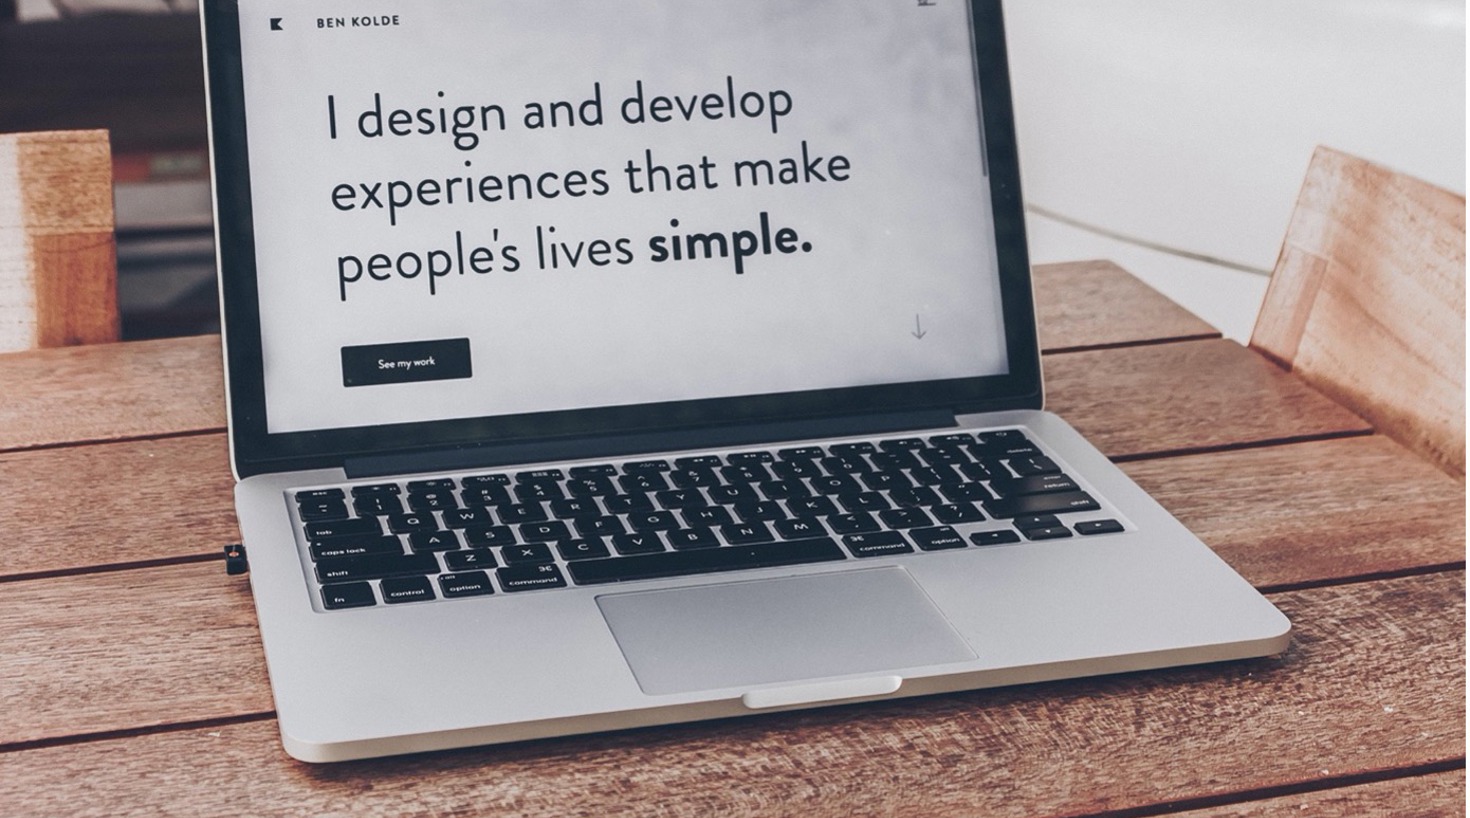 Bilde av en Mac som viser det kjente sitatet fra Ben Kolde I design and develop experiences that make people's lives simple. Det er viktig å se på design når vi kartlegger kundereisen i CX-arbeidet. 